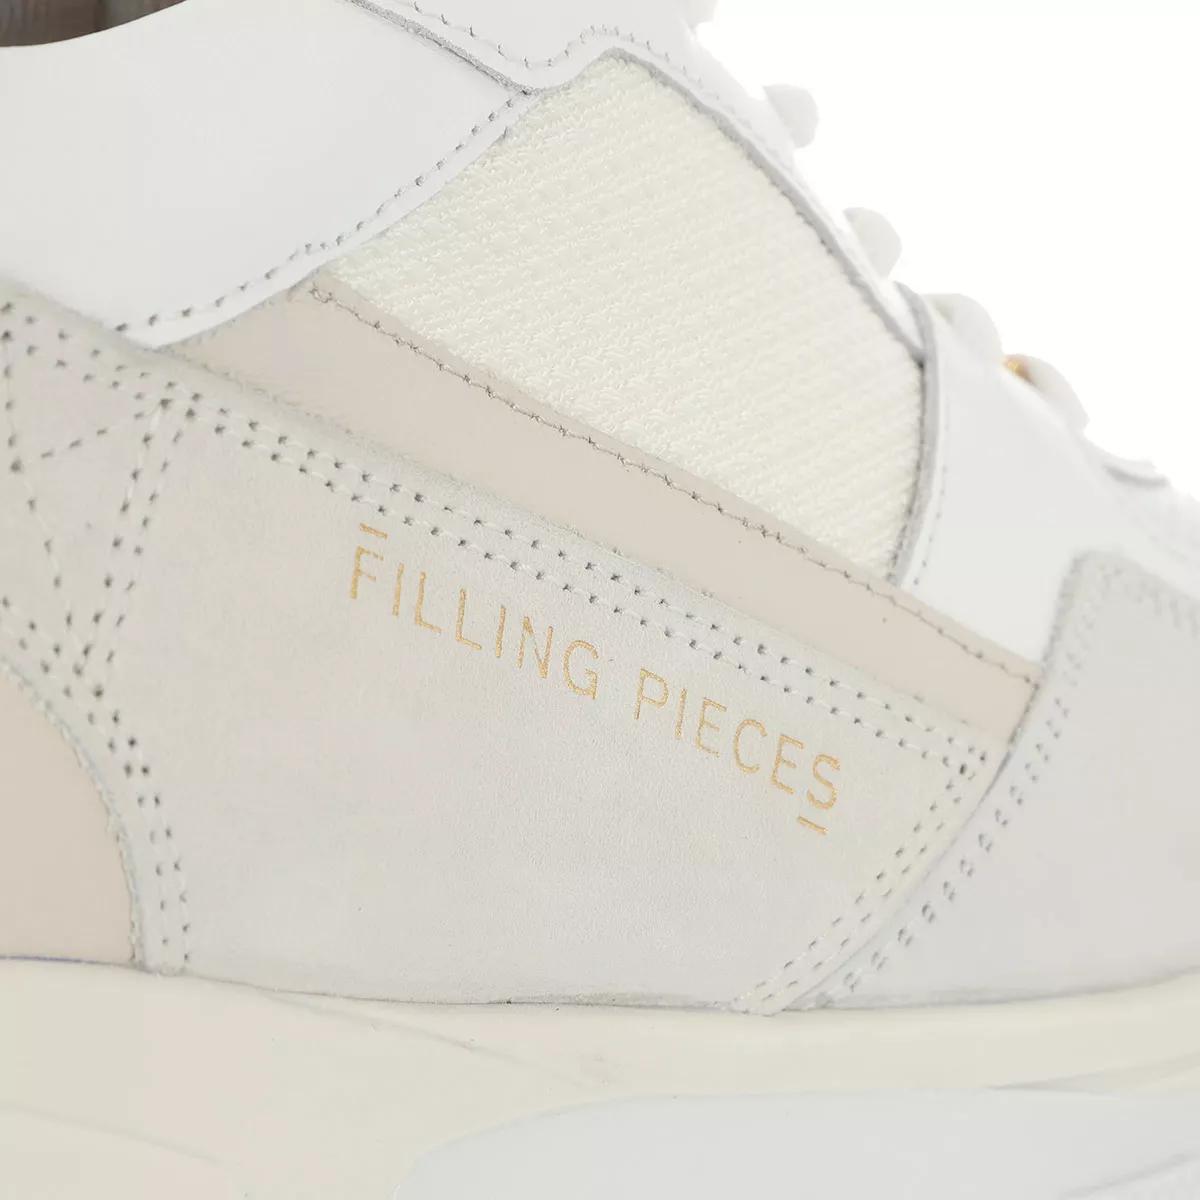 Filling Pieces Sneakers - Kyoto Radar Glare - Gr. 36 (EU) - in Beige - für Damen von Filling Pieces